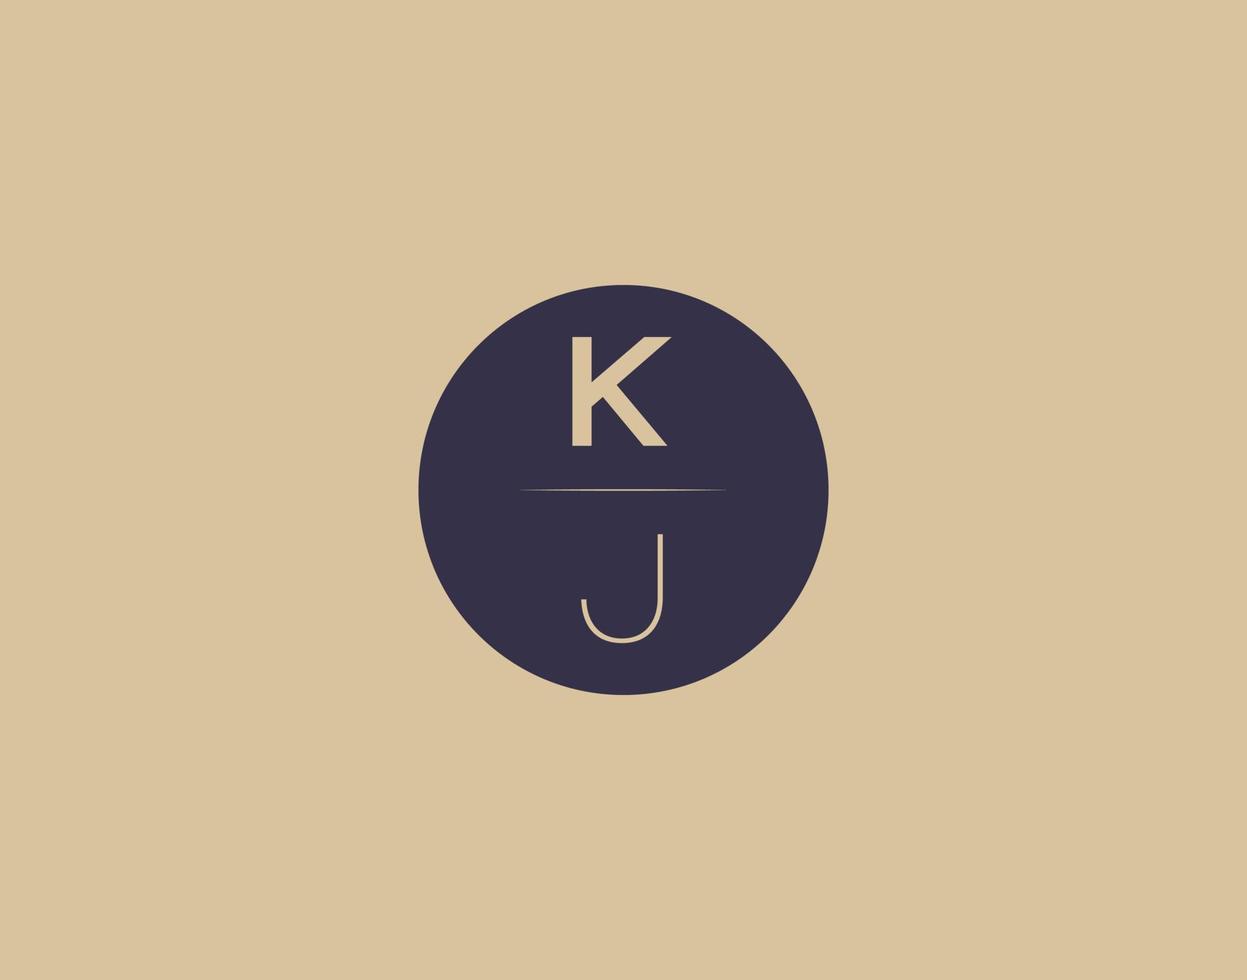 KJ letter modern elegant logo design vector images